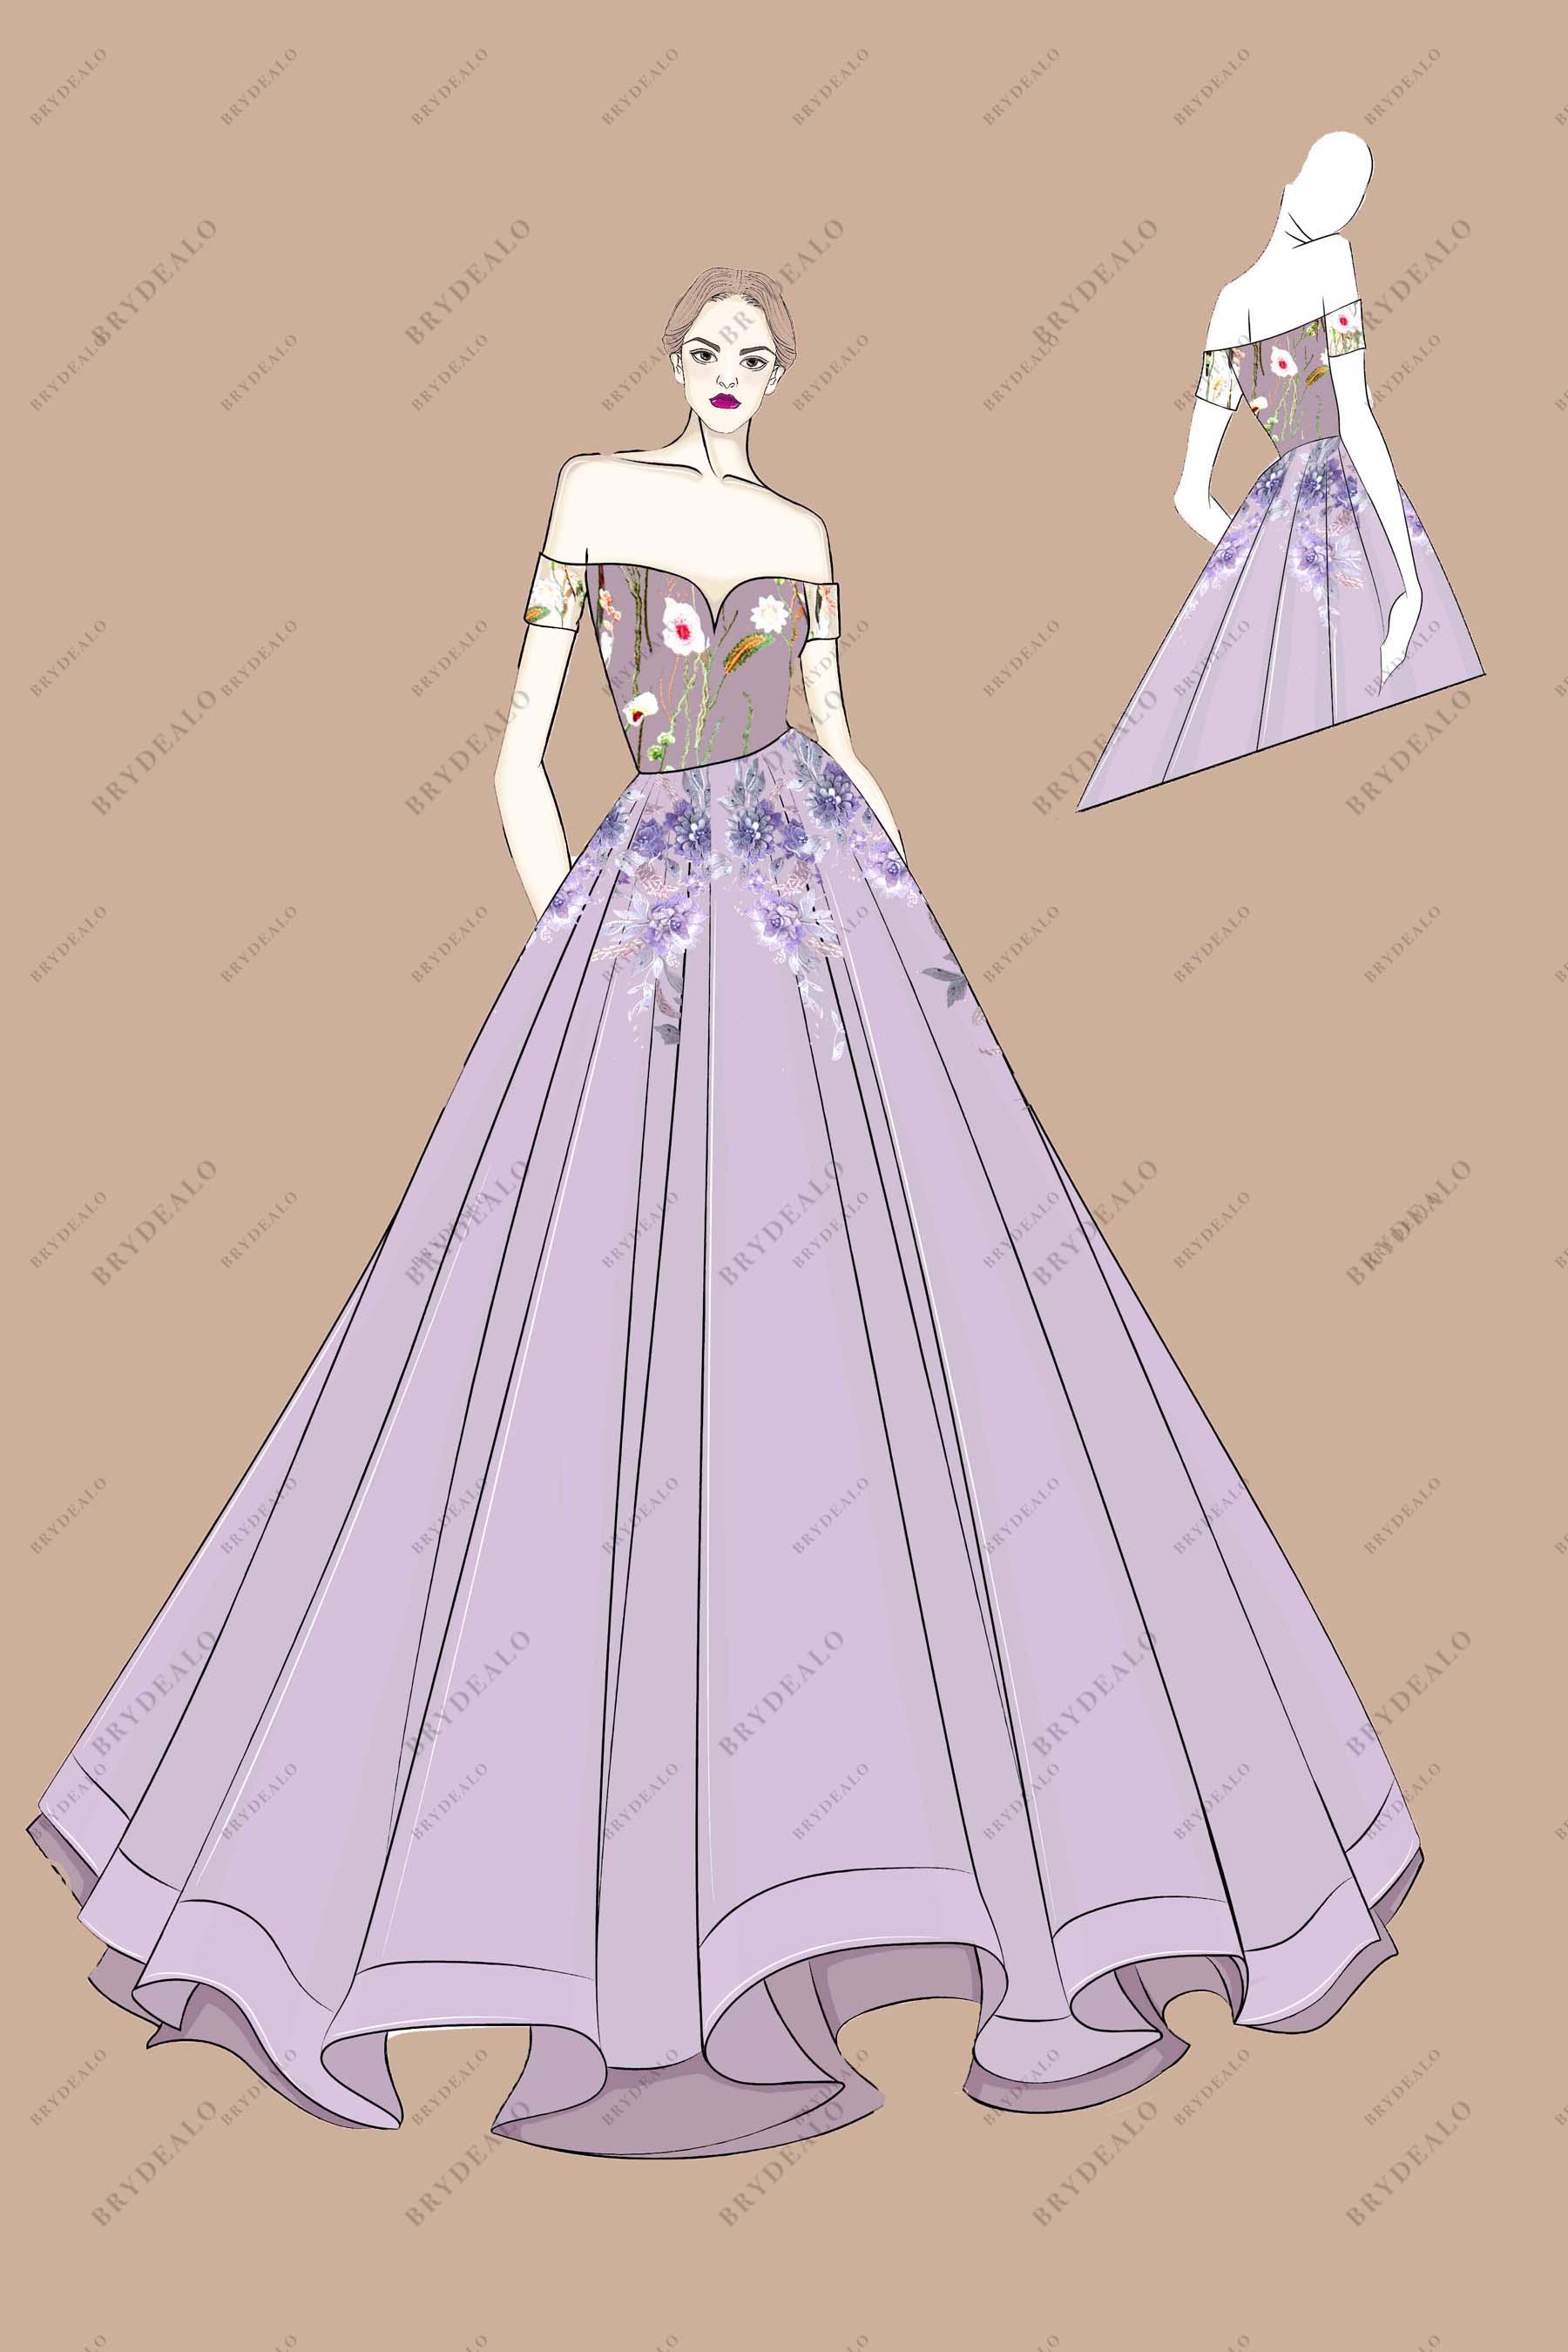 Designer Wild Floral Off-shoulder Lilac Bridal Dress Sketch